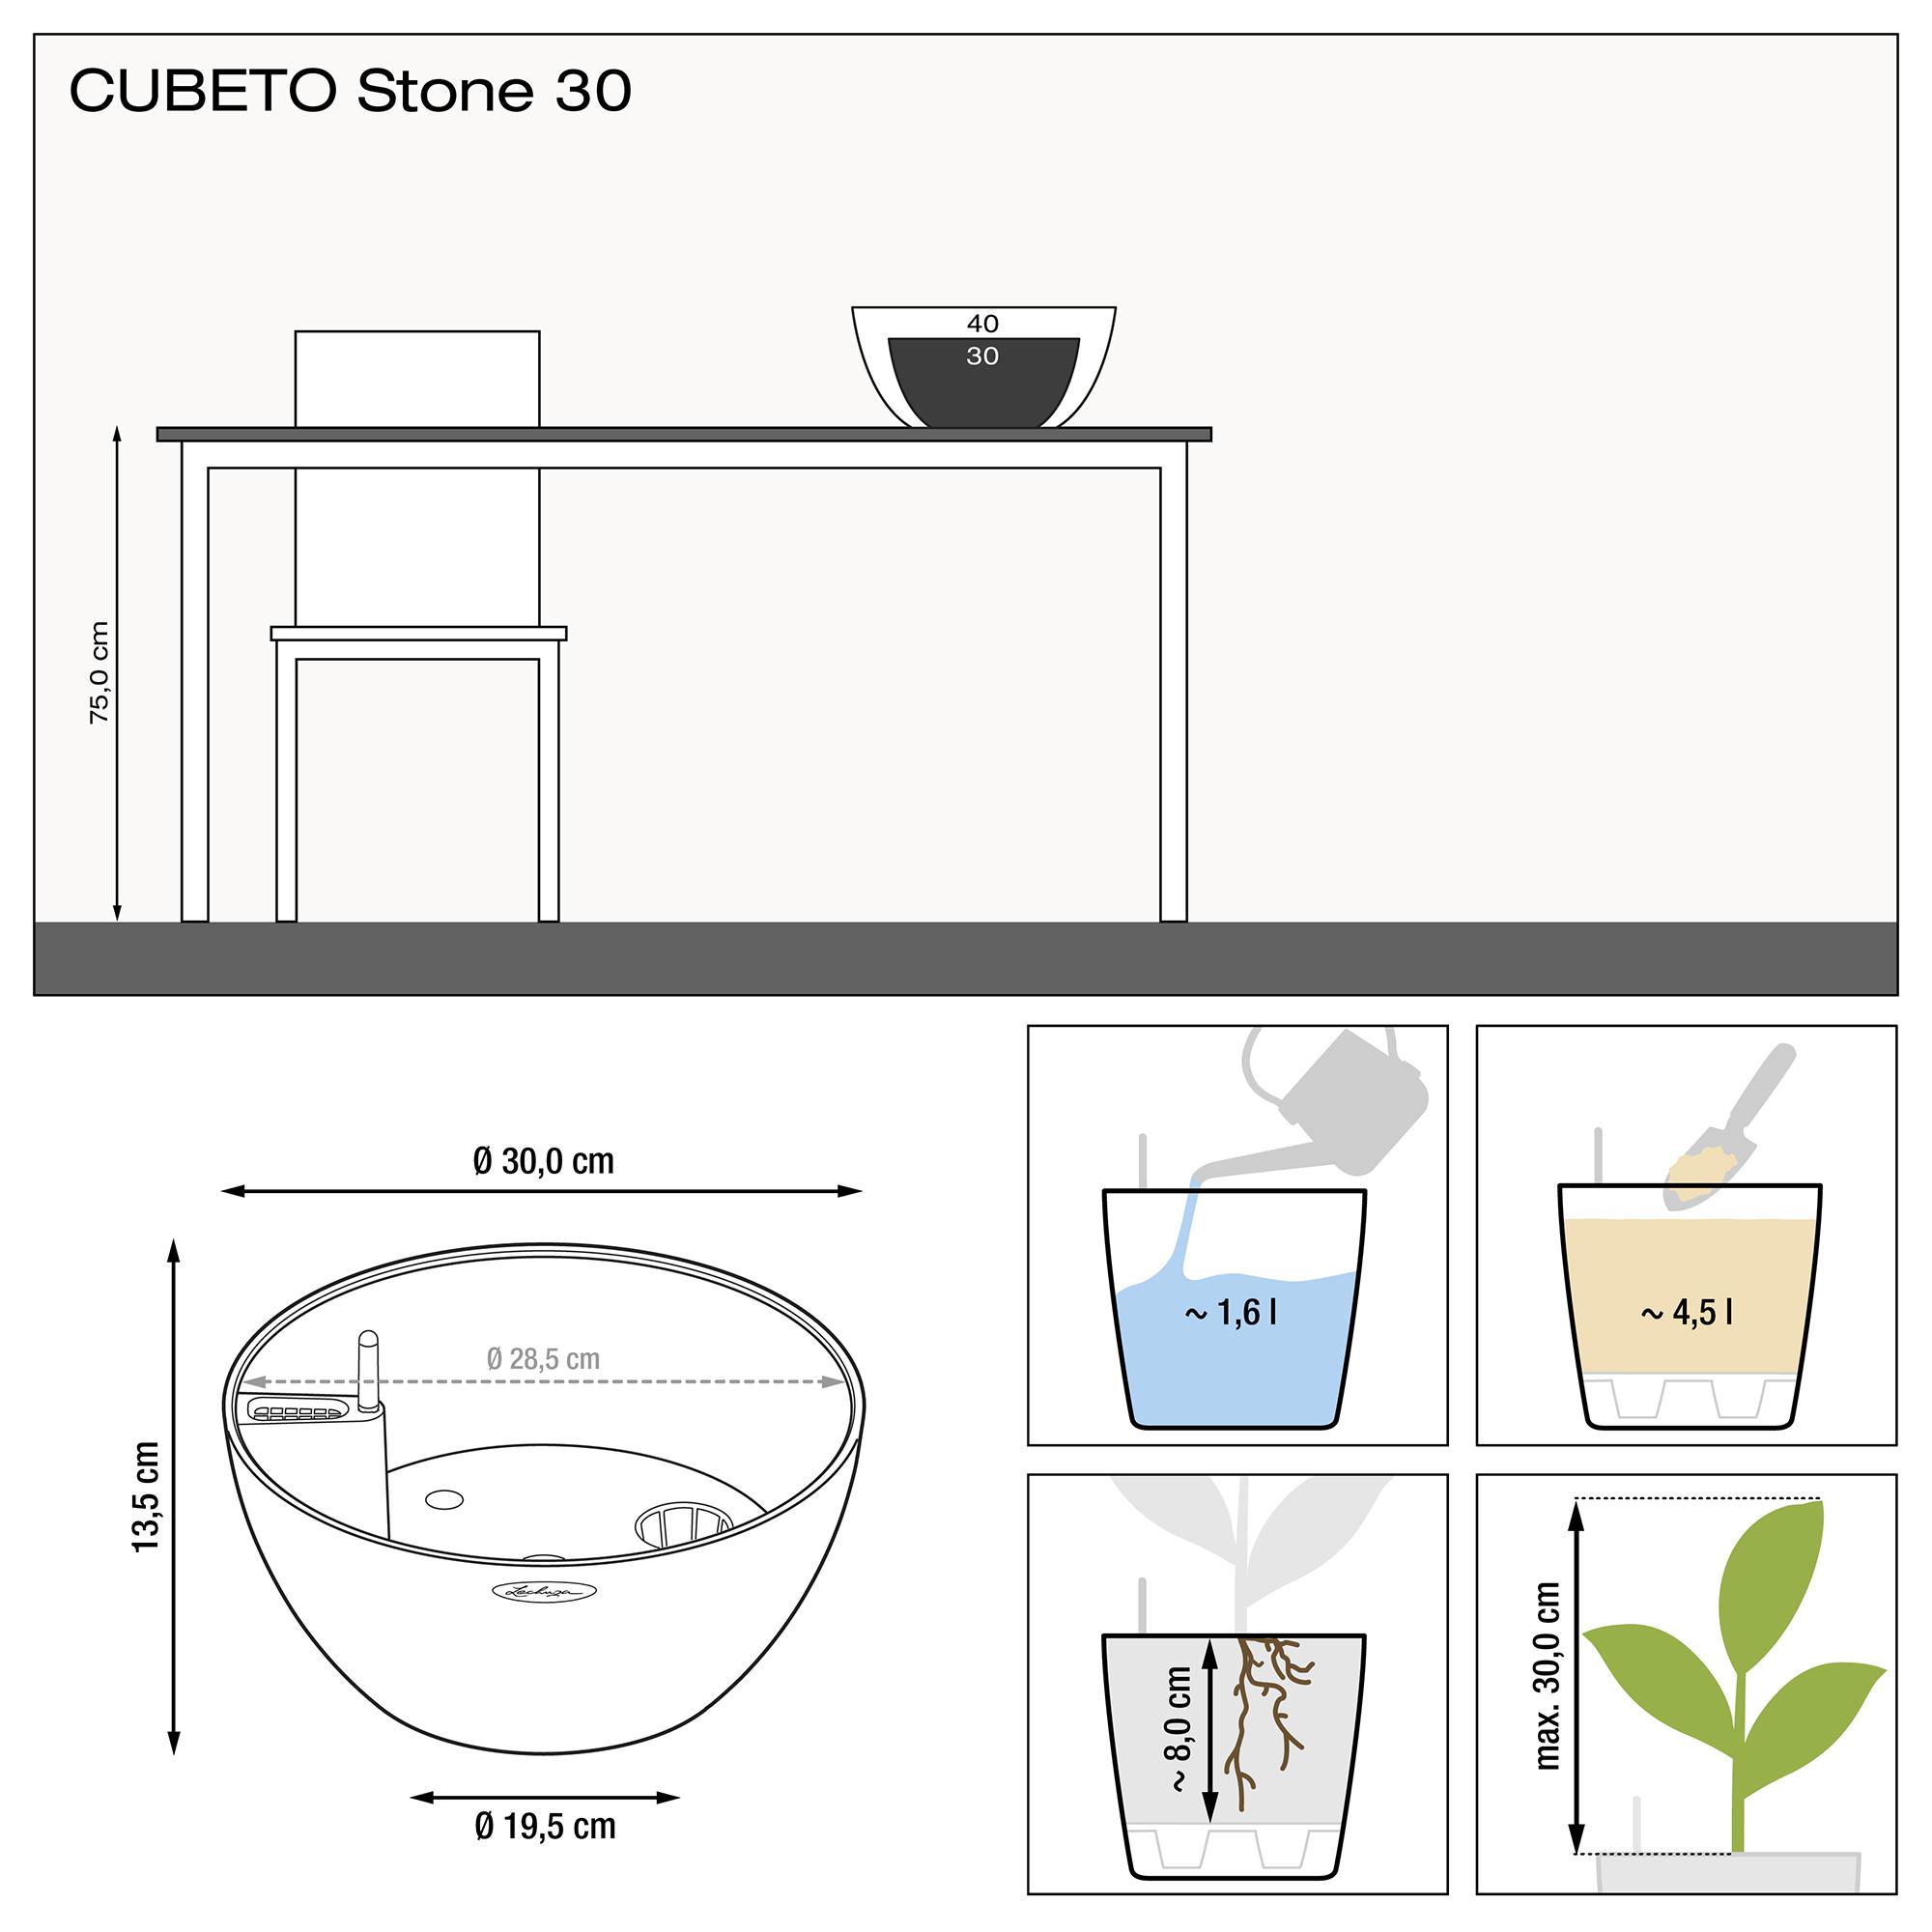 le_cubeto-stone30_product_addi_nz Thumb